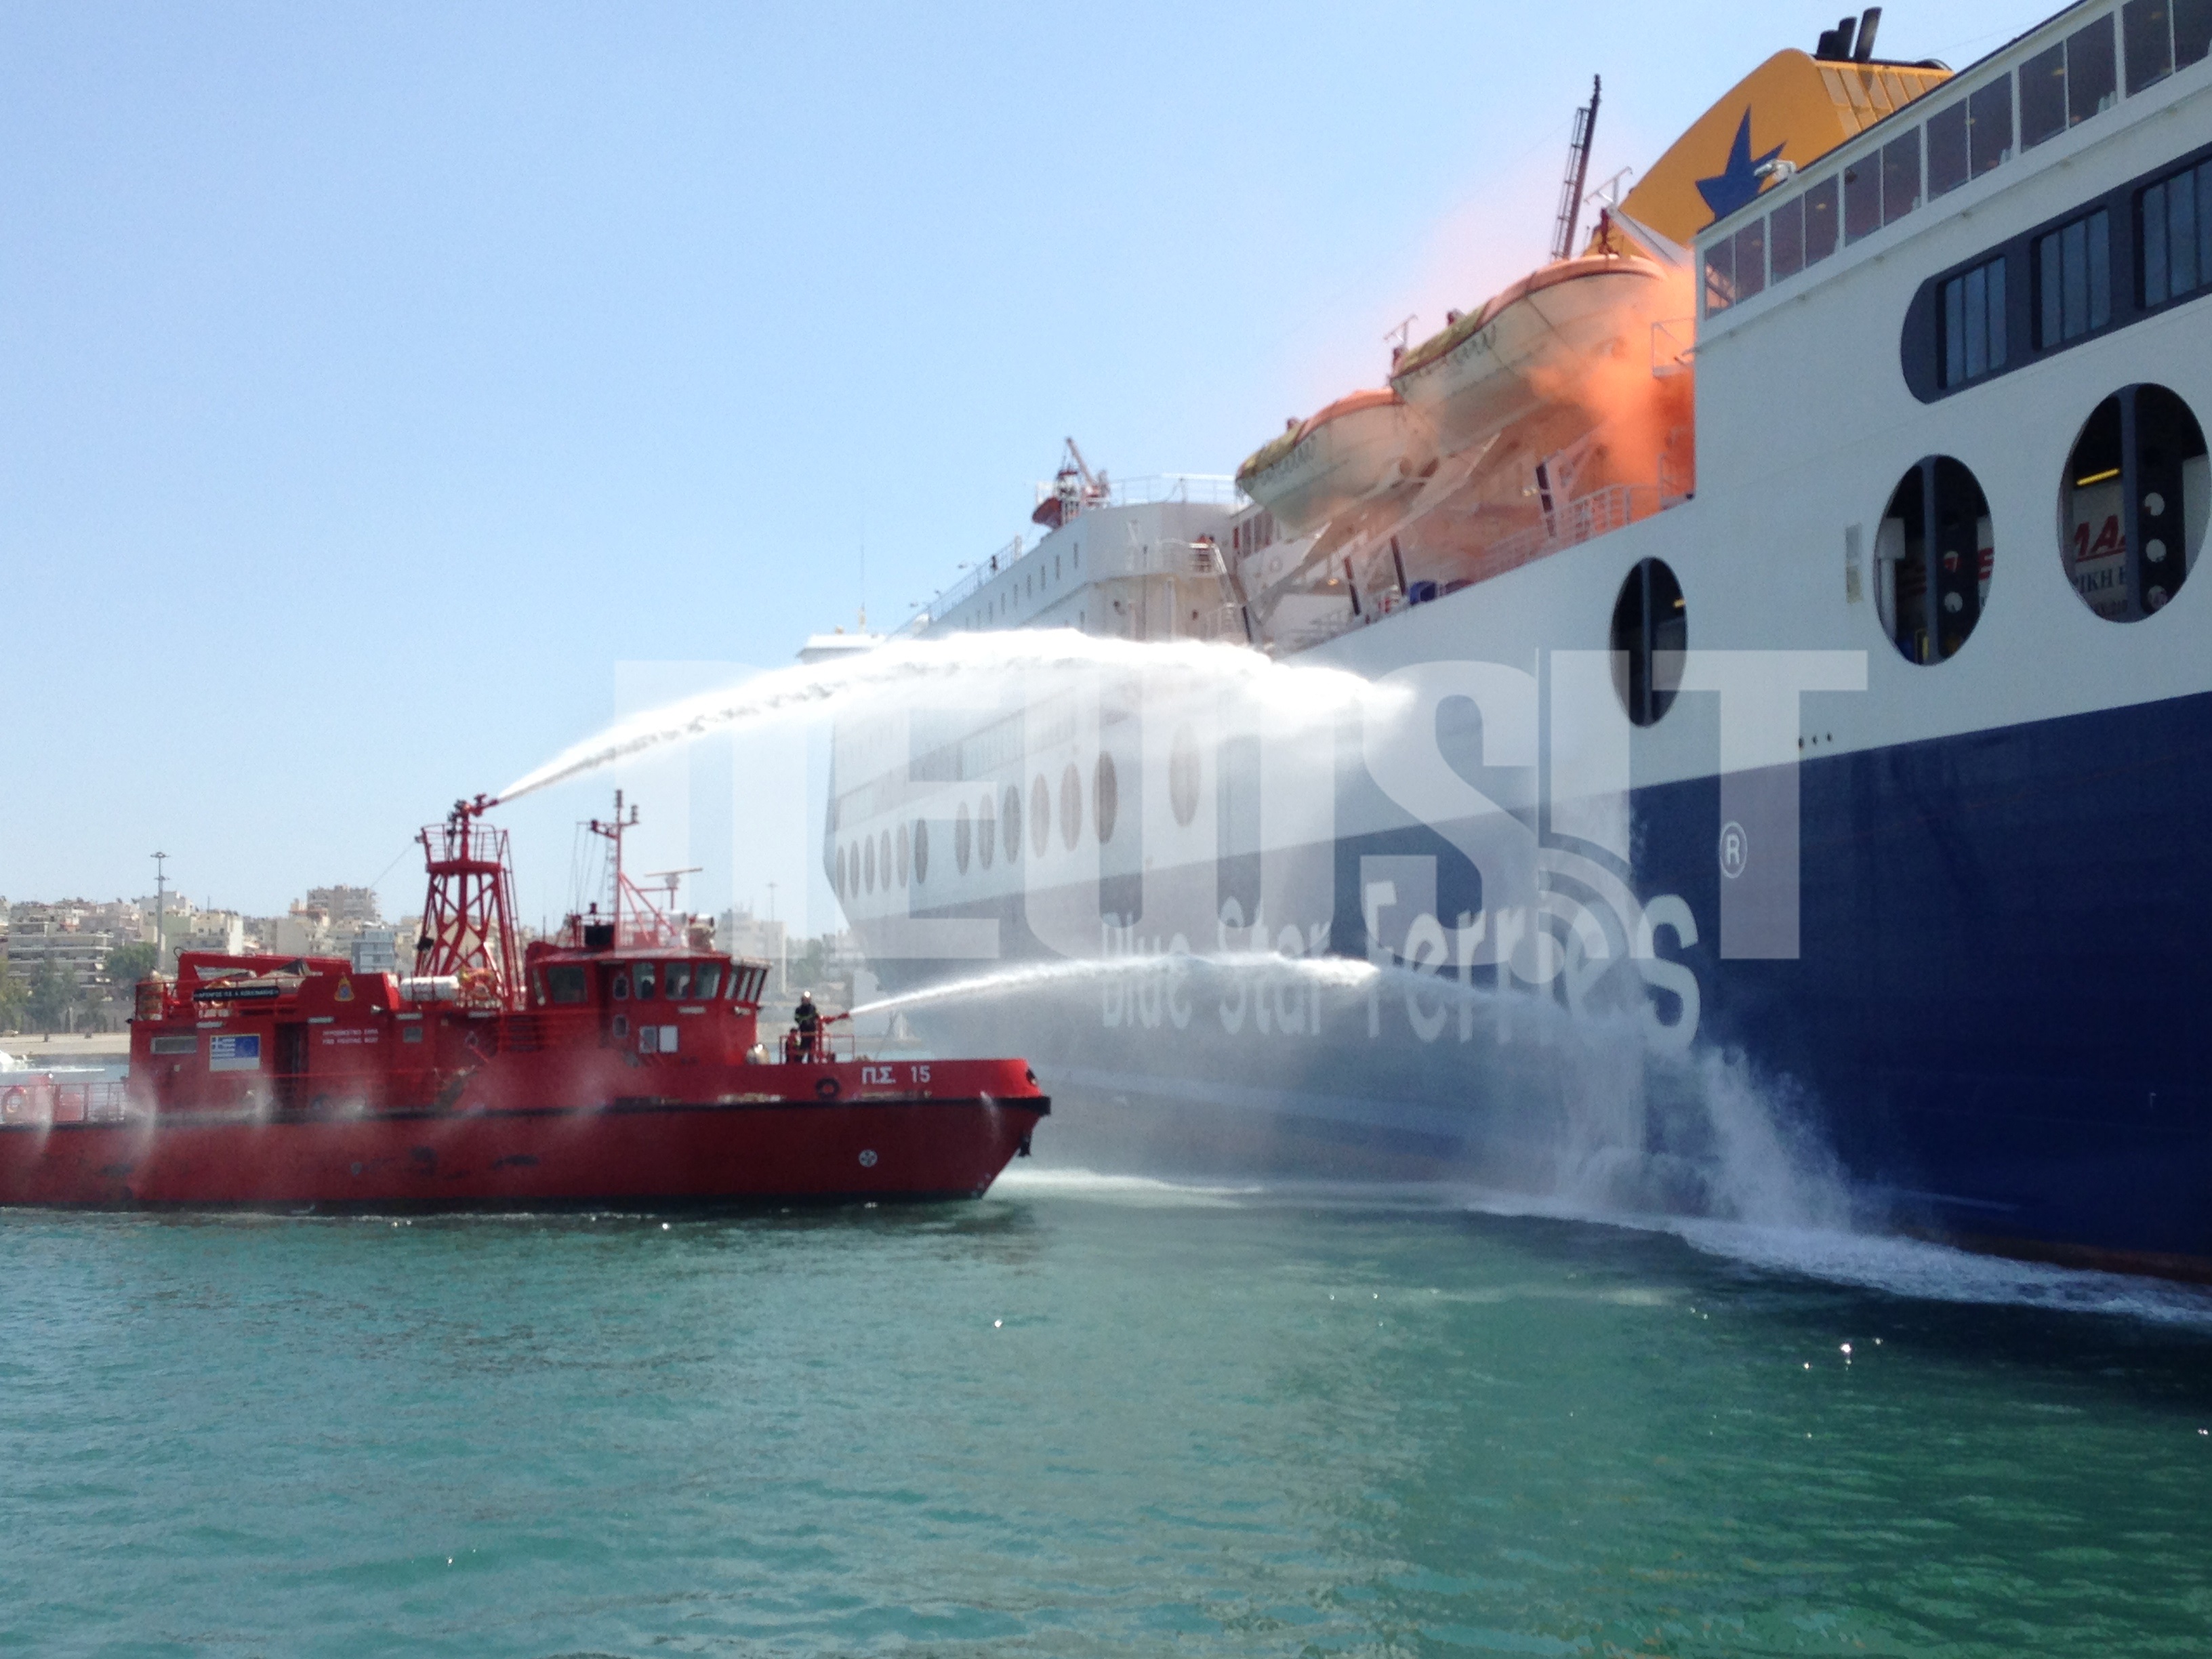 Το πυροσβεστικό σκάφος πραγματοποιείς ρίψεις νερού στο πλοίο στο πλαίσιο της άσκησης - ΦΩΤΟ NEWSIT 